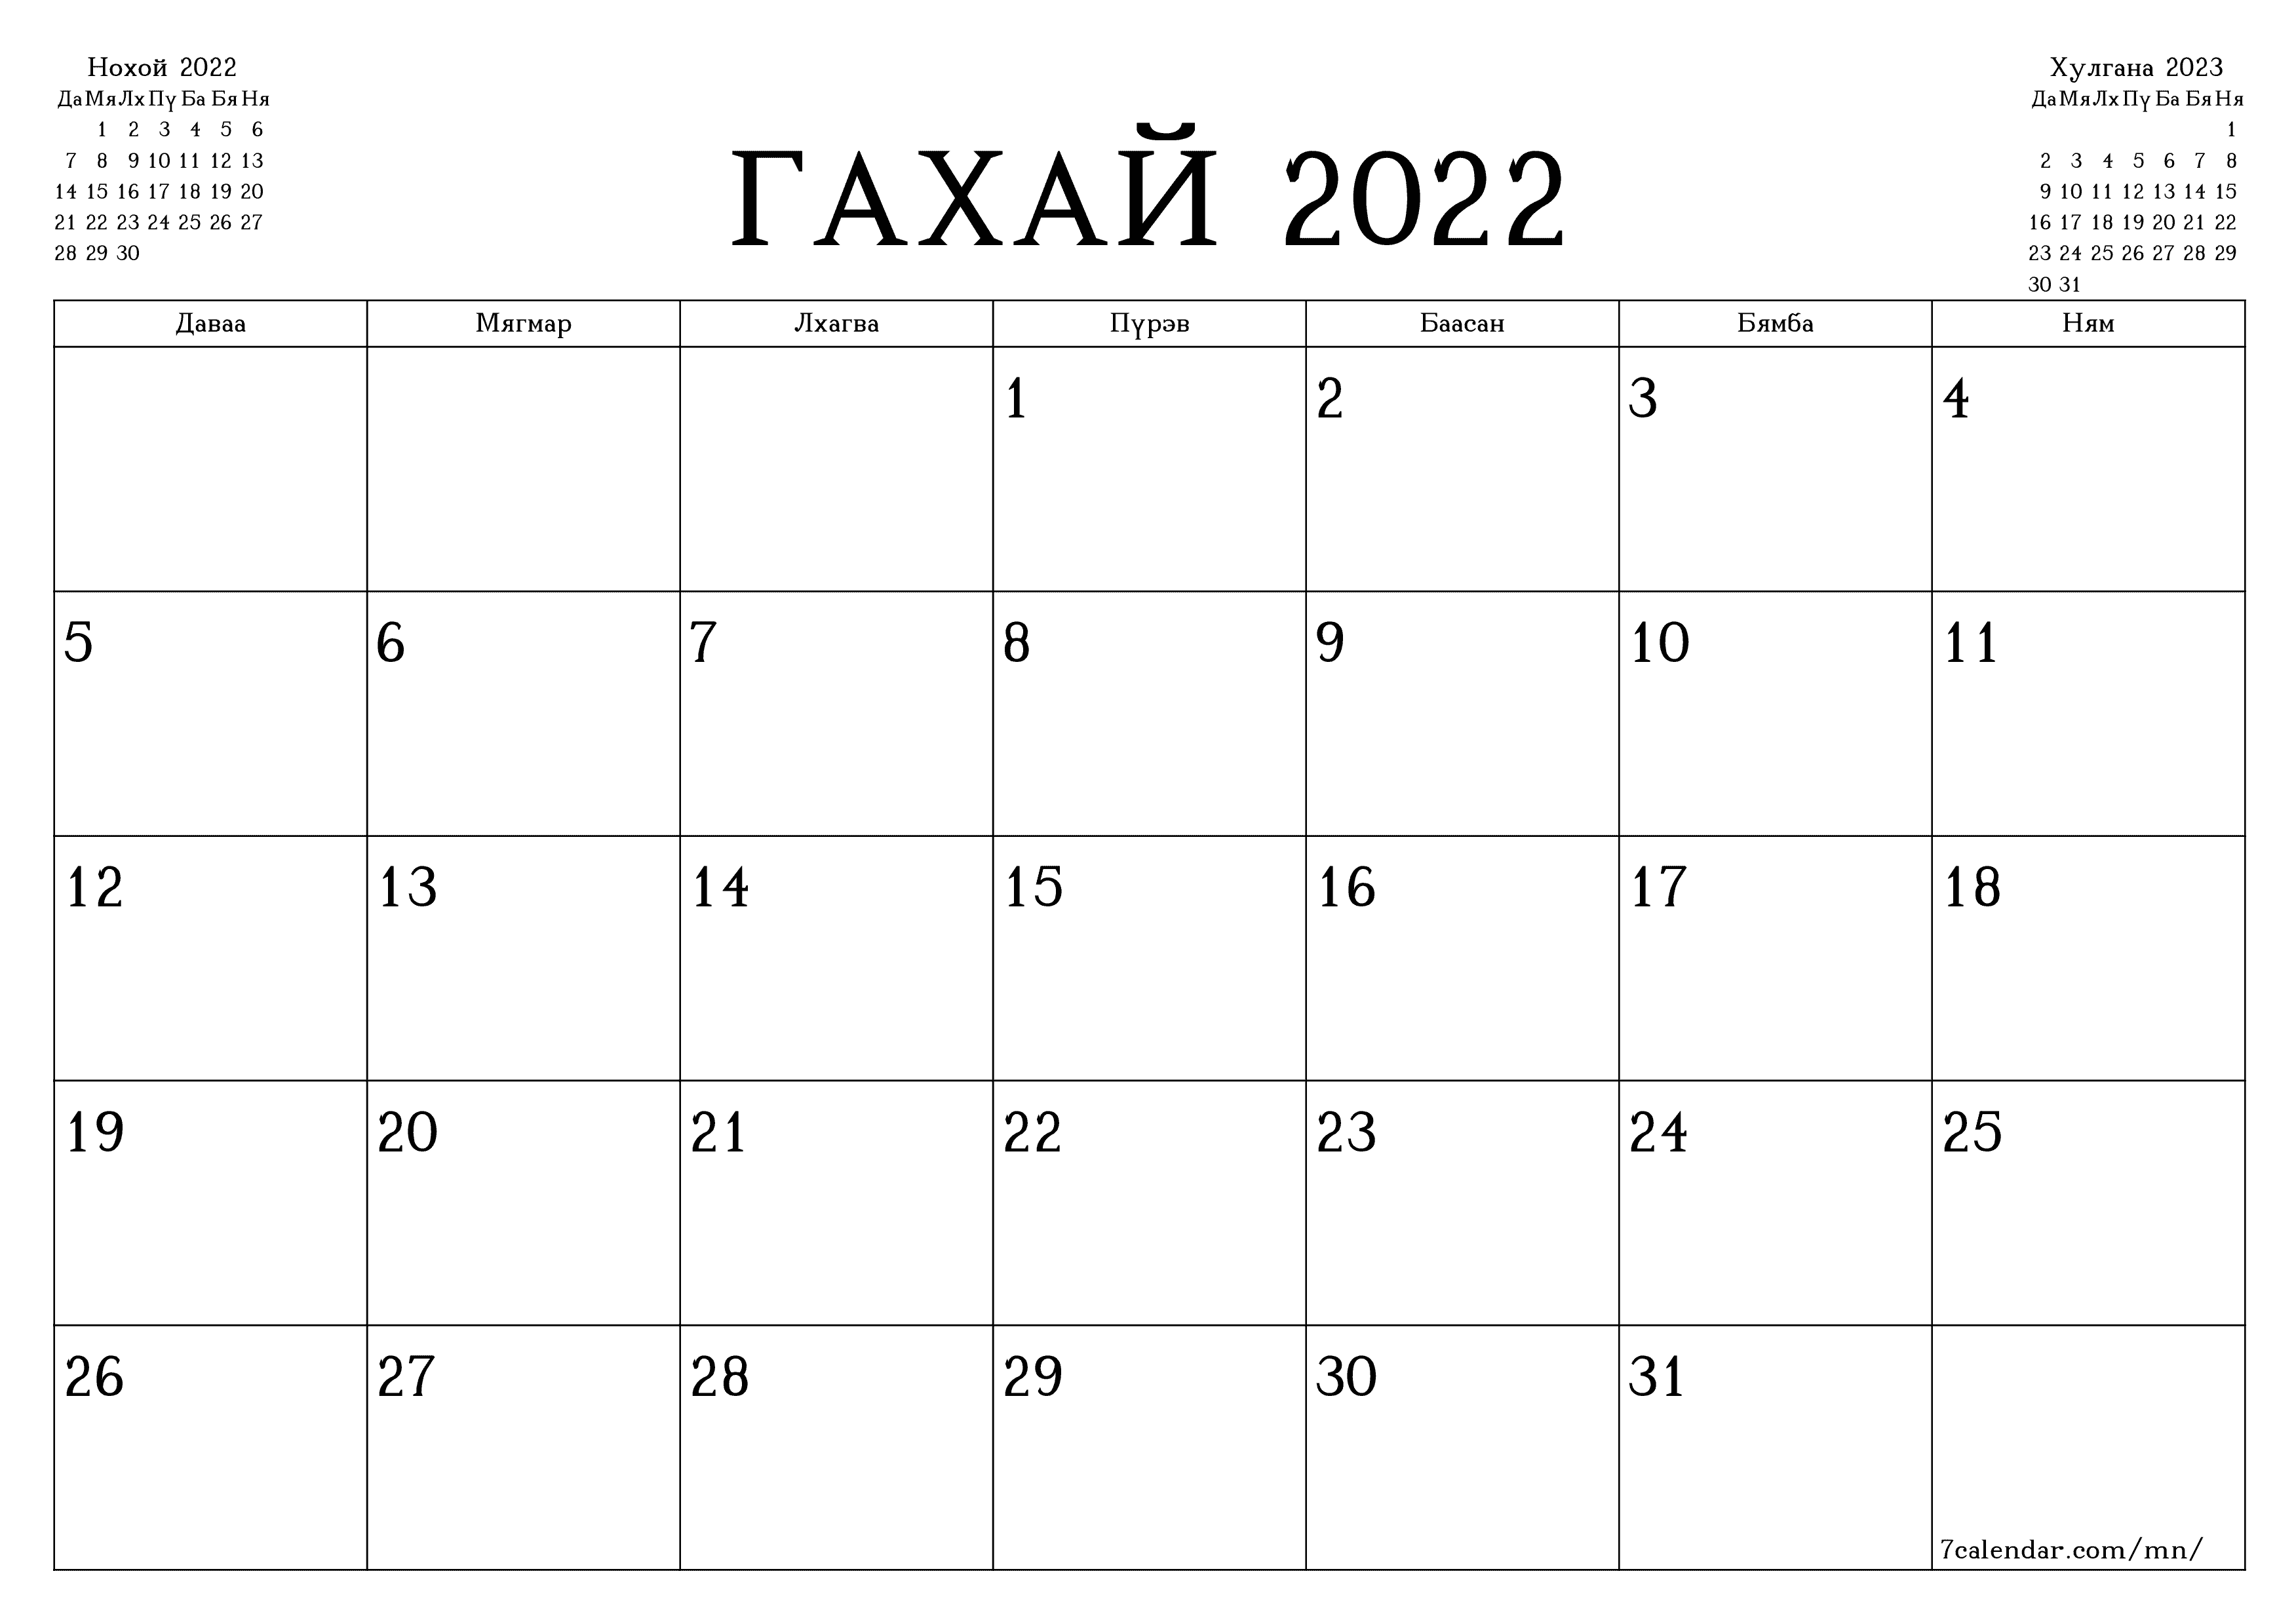 Гахай 2022 сарын сар бүрийн төлөвлөгөөг тэмдэглэлтэй хоосон байлгаж, PDF хэлбэрээр хадгалж, хэвлэ PNG Mongolian